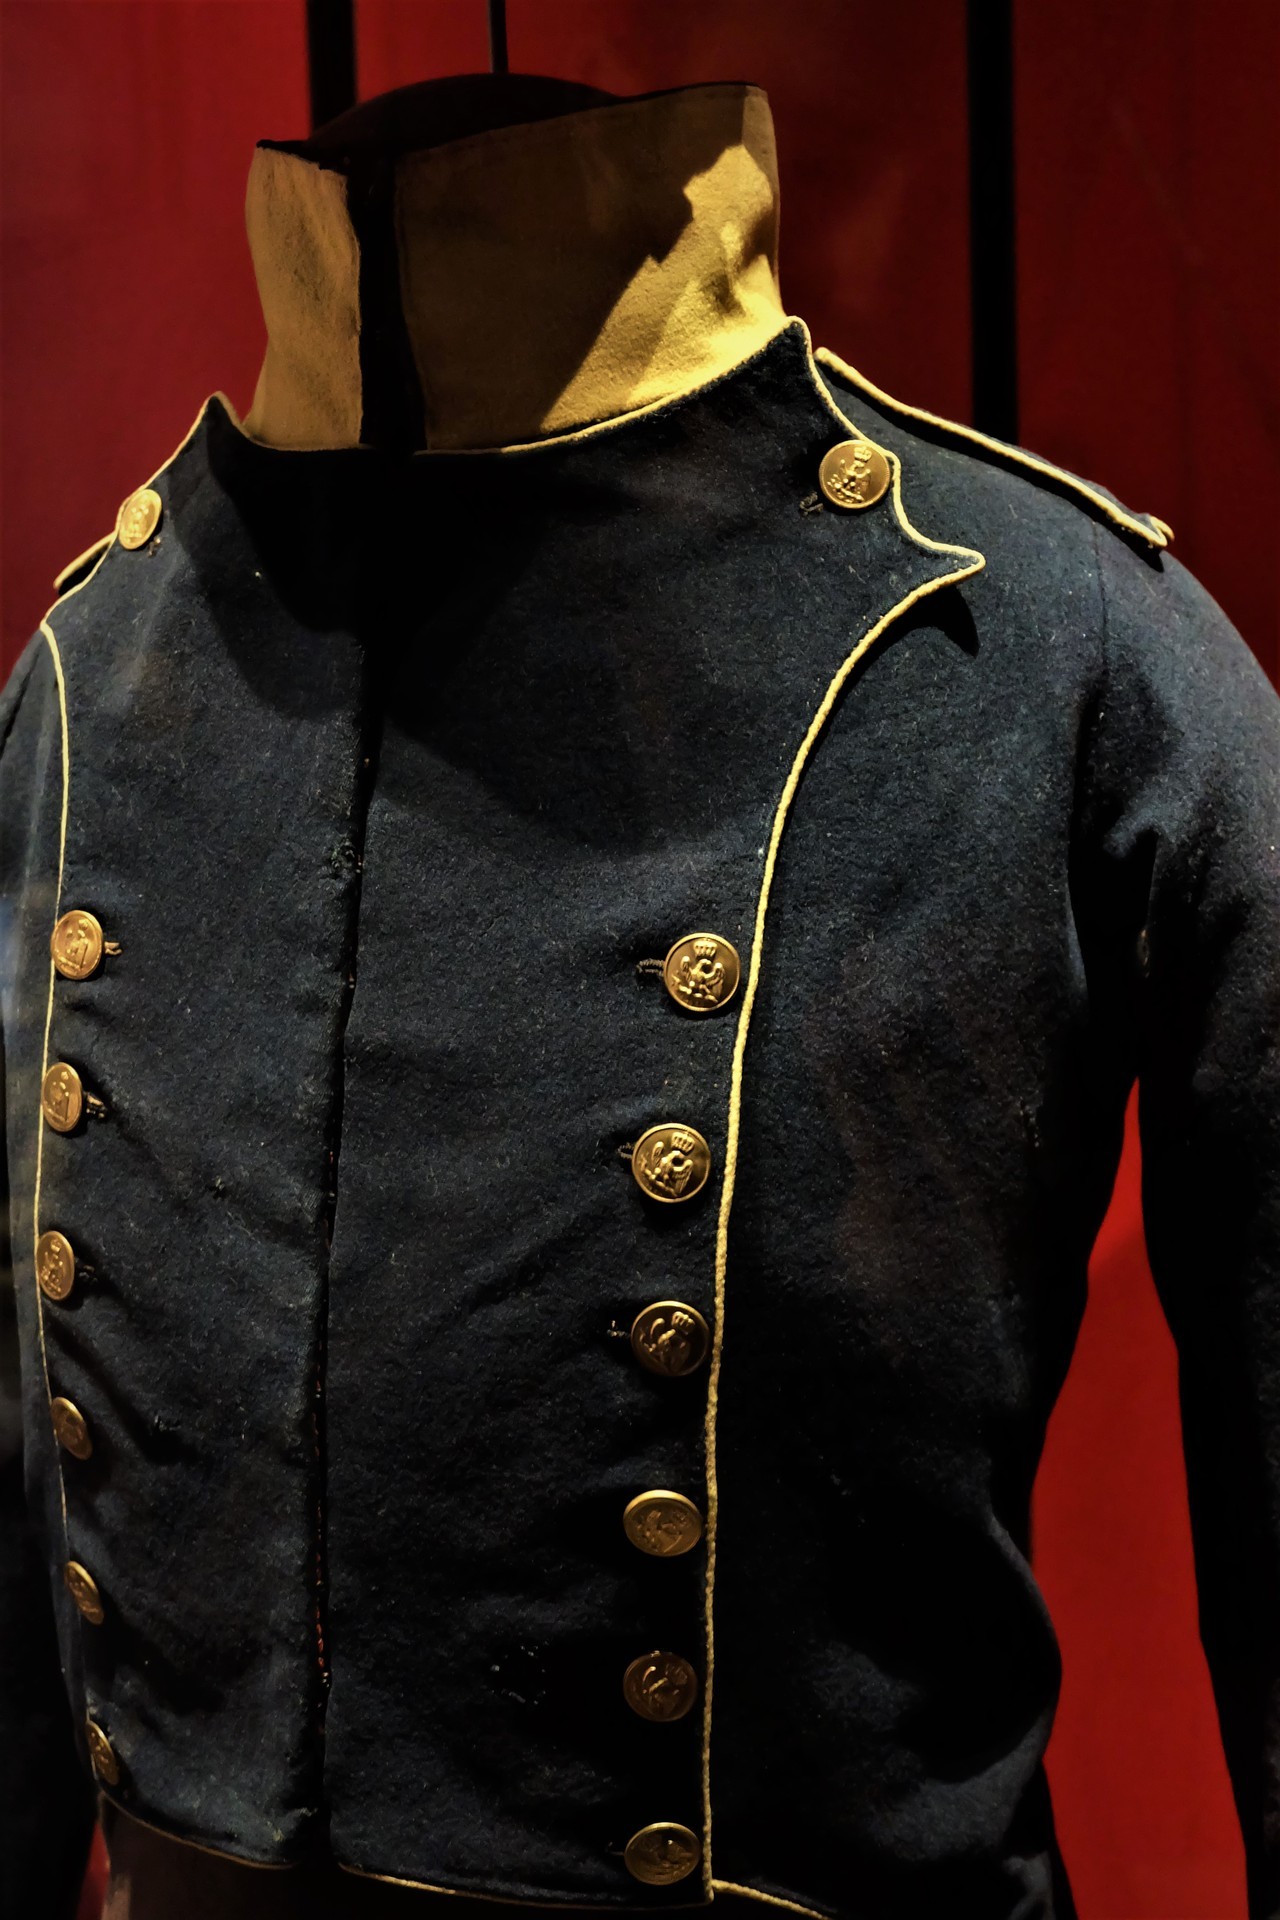 Сюртучок-с коротковат-с будет Униформа, мушкет, вольтижера, императорской, гвардии, Французской, империи, датированная, 18121815